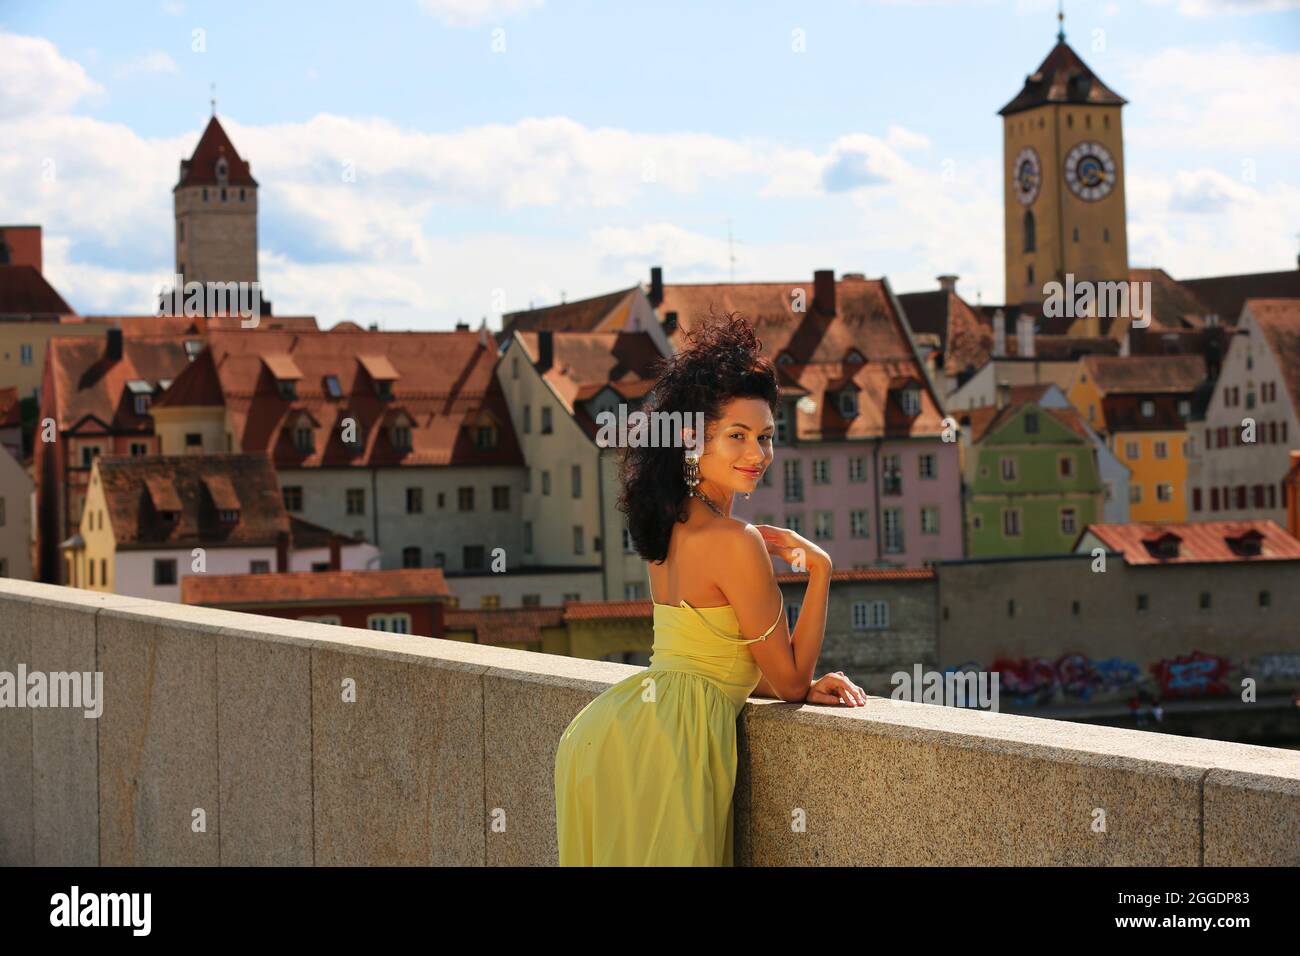 Regensburg Altstadt oder Innenstadt oder City mit schwarzhaariger Schönheit mit sinnlichen Blick und  gelben Kleid. Oberpfalz, Bayern, Regensburg. Stock Photo